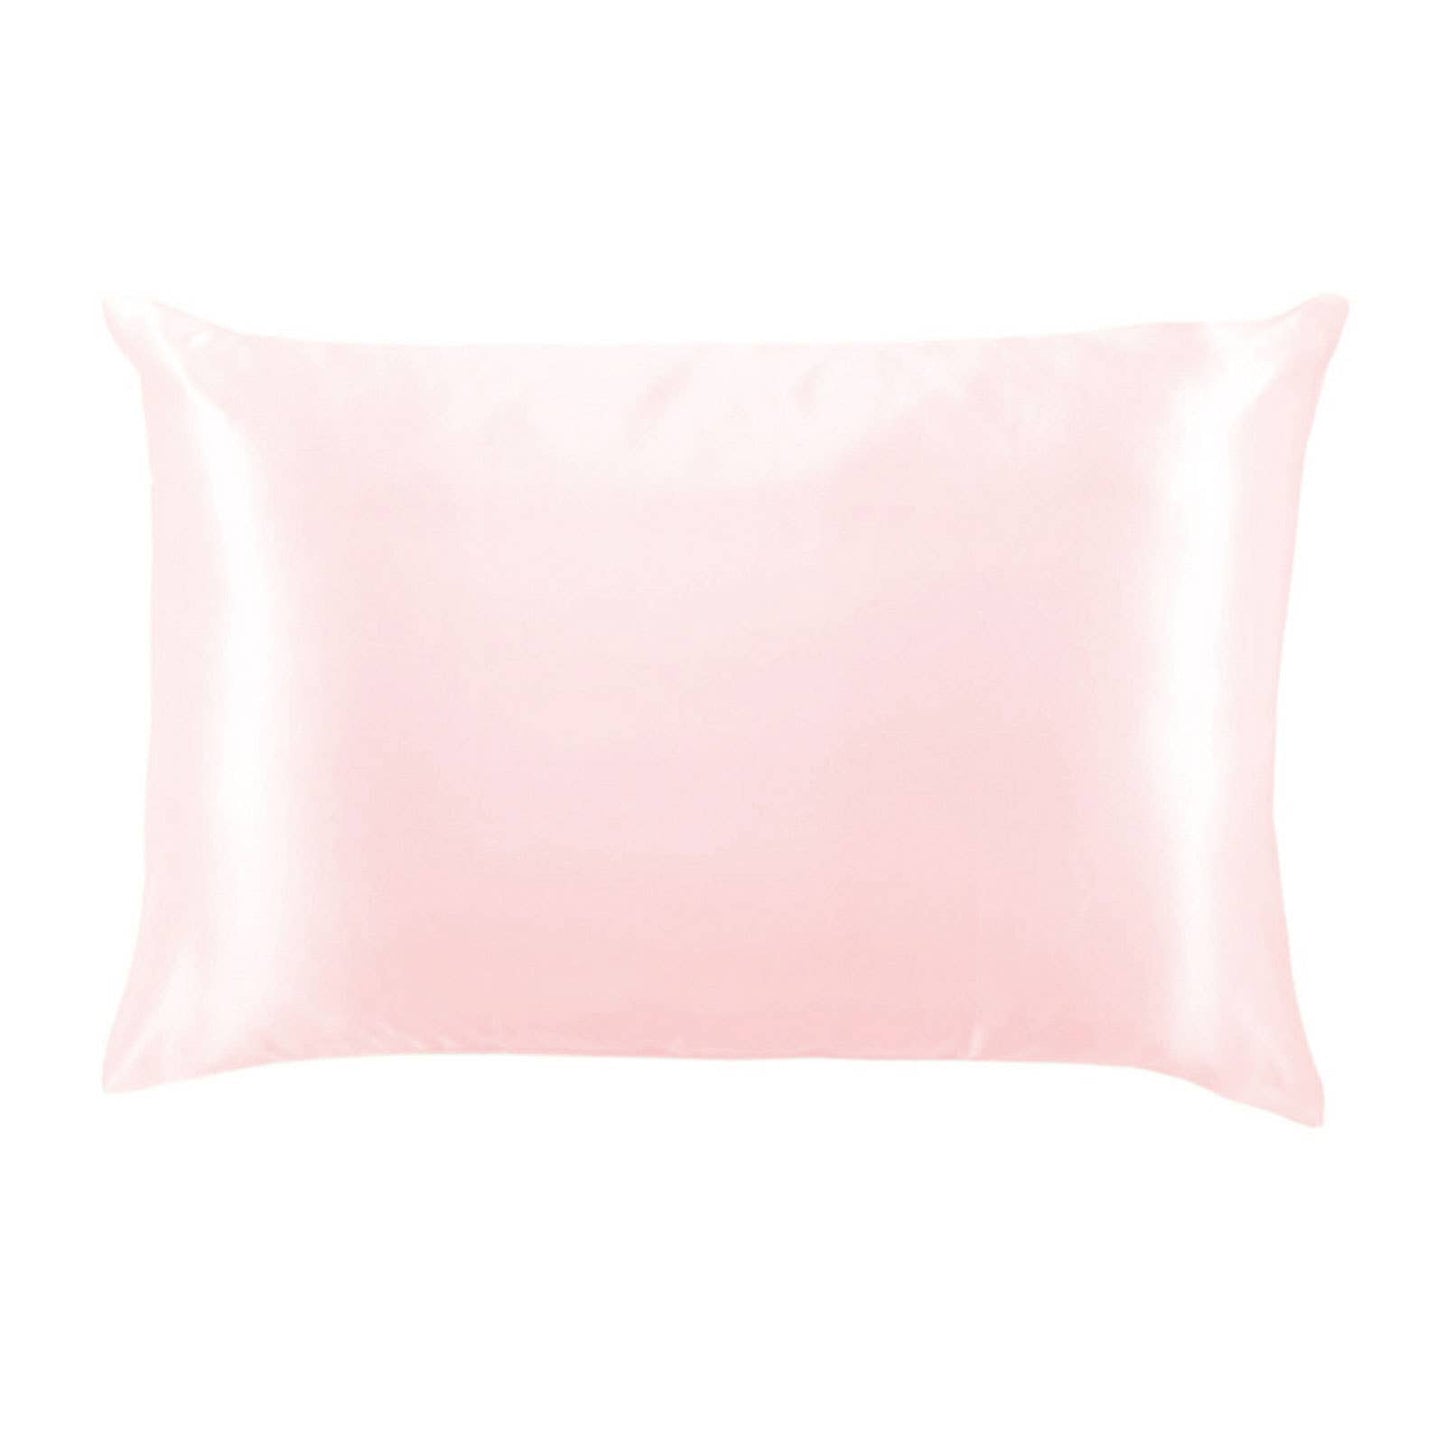 DM Merchandising - Lemon Lavender Solid Silky Satin Pillow Open Stock: Moonlight